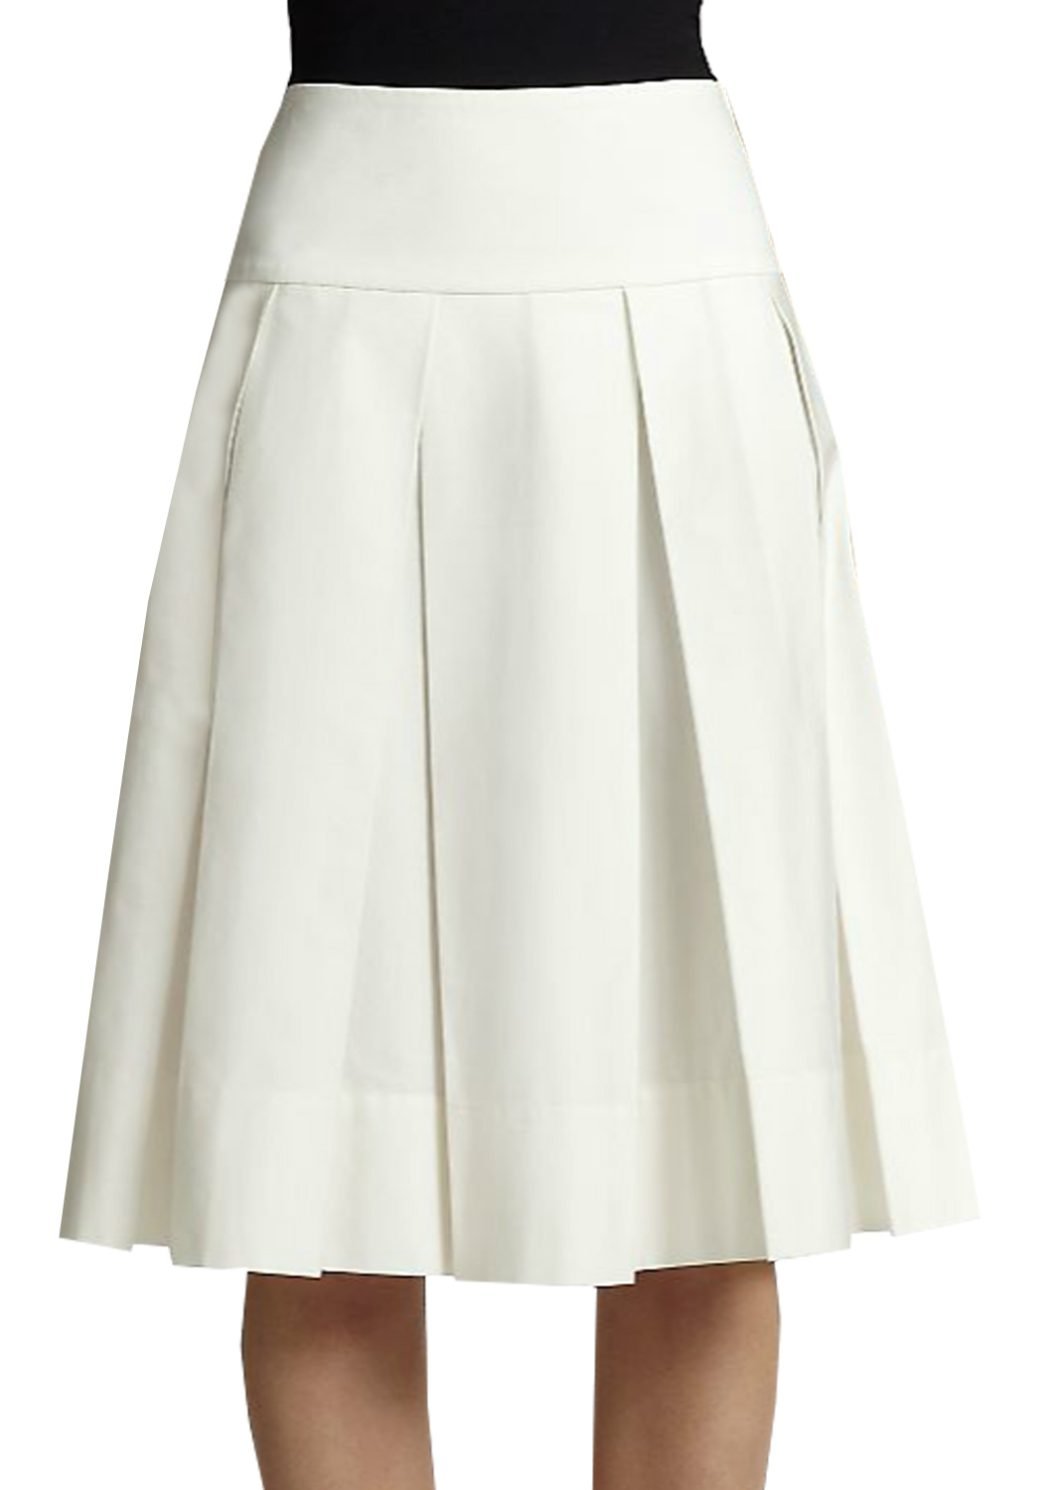 Satin Pleated Mini Skirt – Elizabeth's Custom Skirts